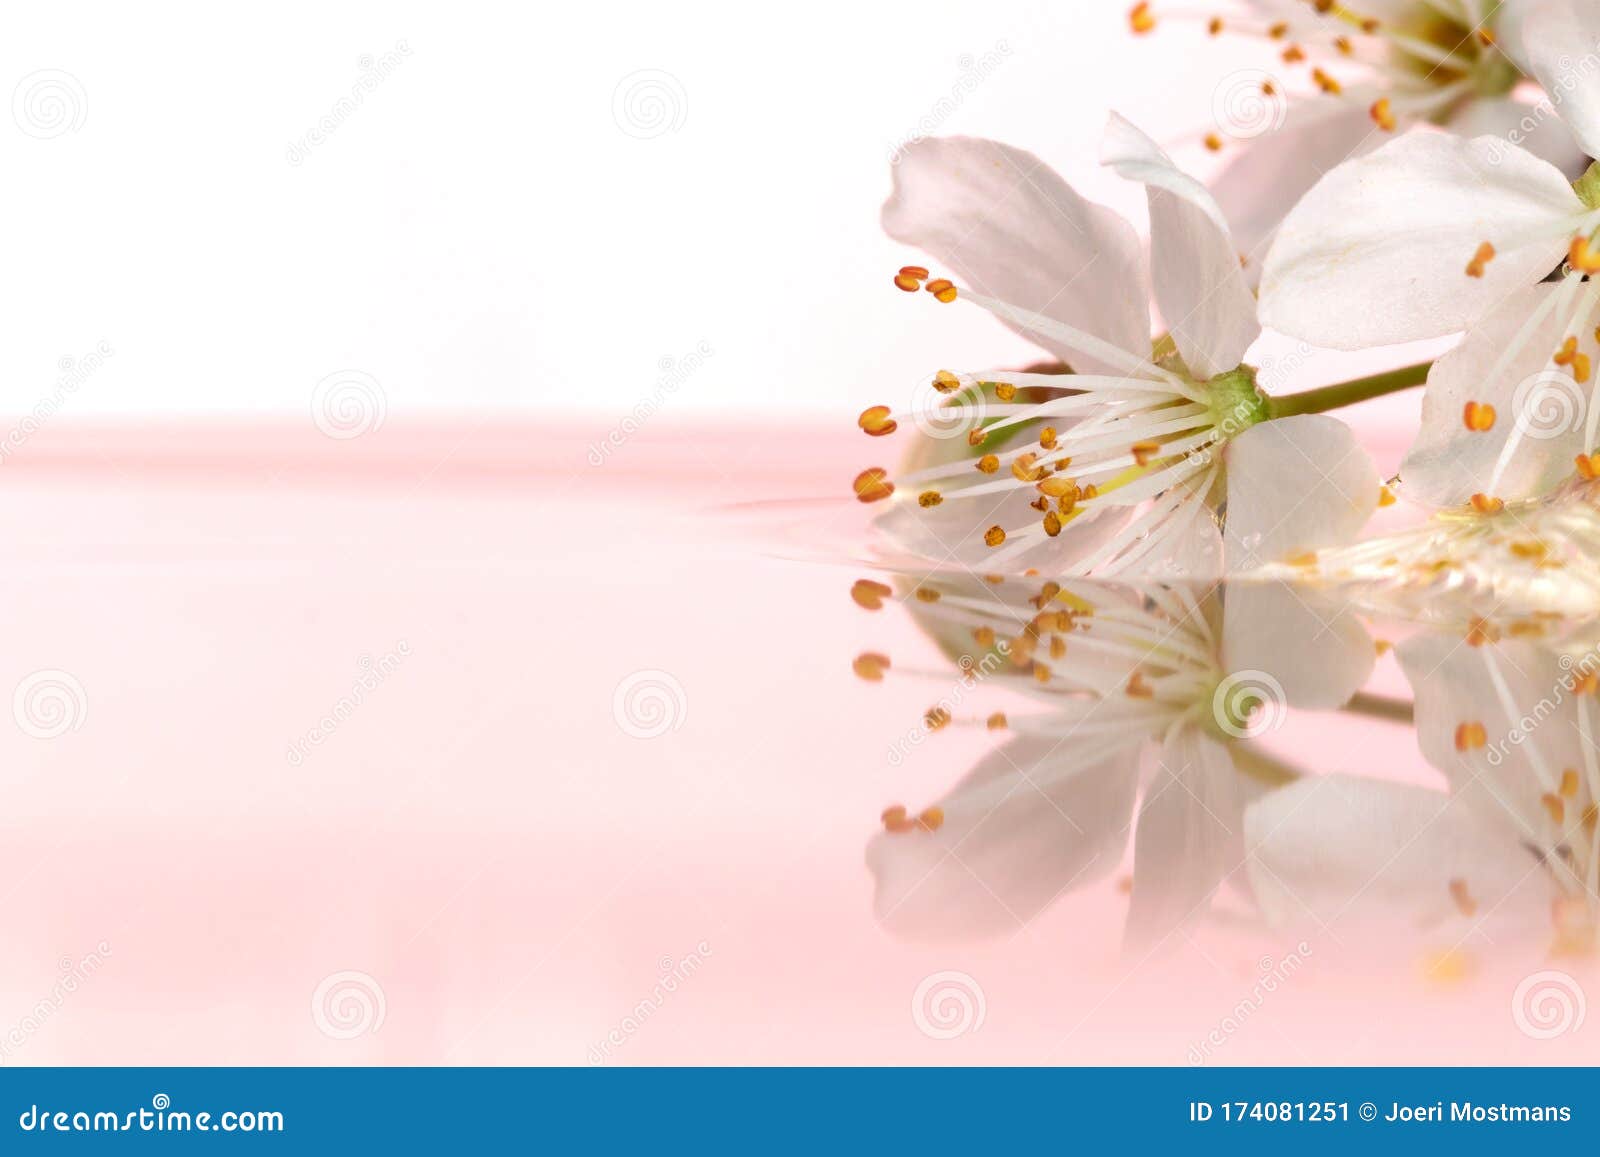 一幅梦幻般的画像 一朵白花漂浮在粉红色背景的水中这朵花在库存图片 图片包括有这朵花在 一幅梦幻般的画像 一朵白花漂浮在粉红色背景的水中